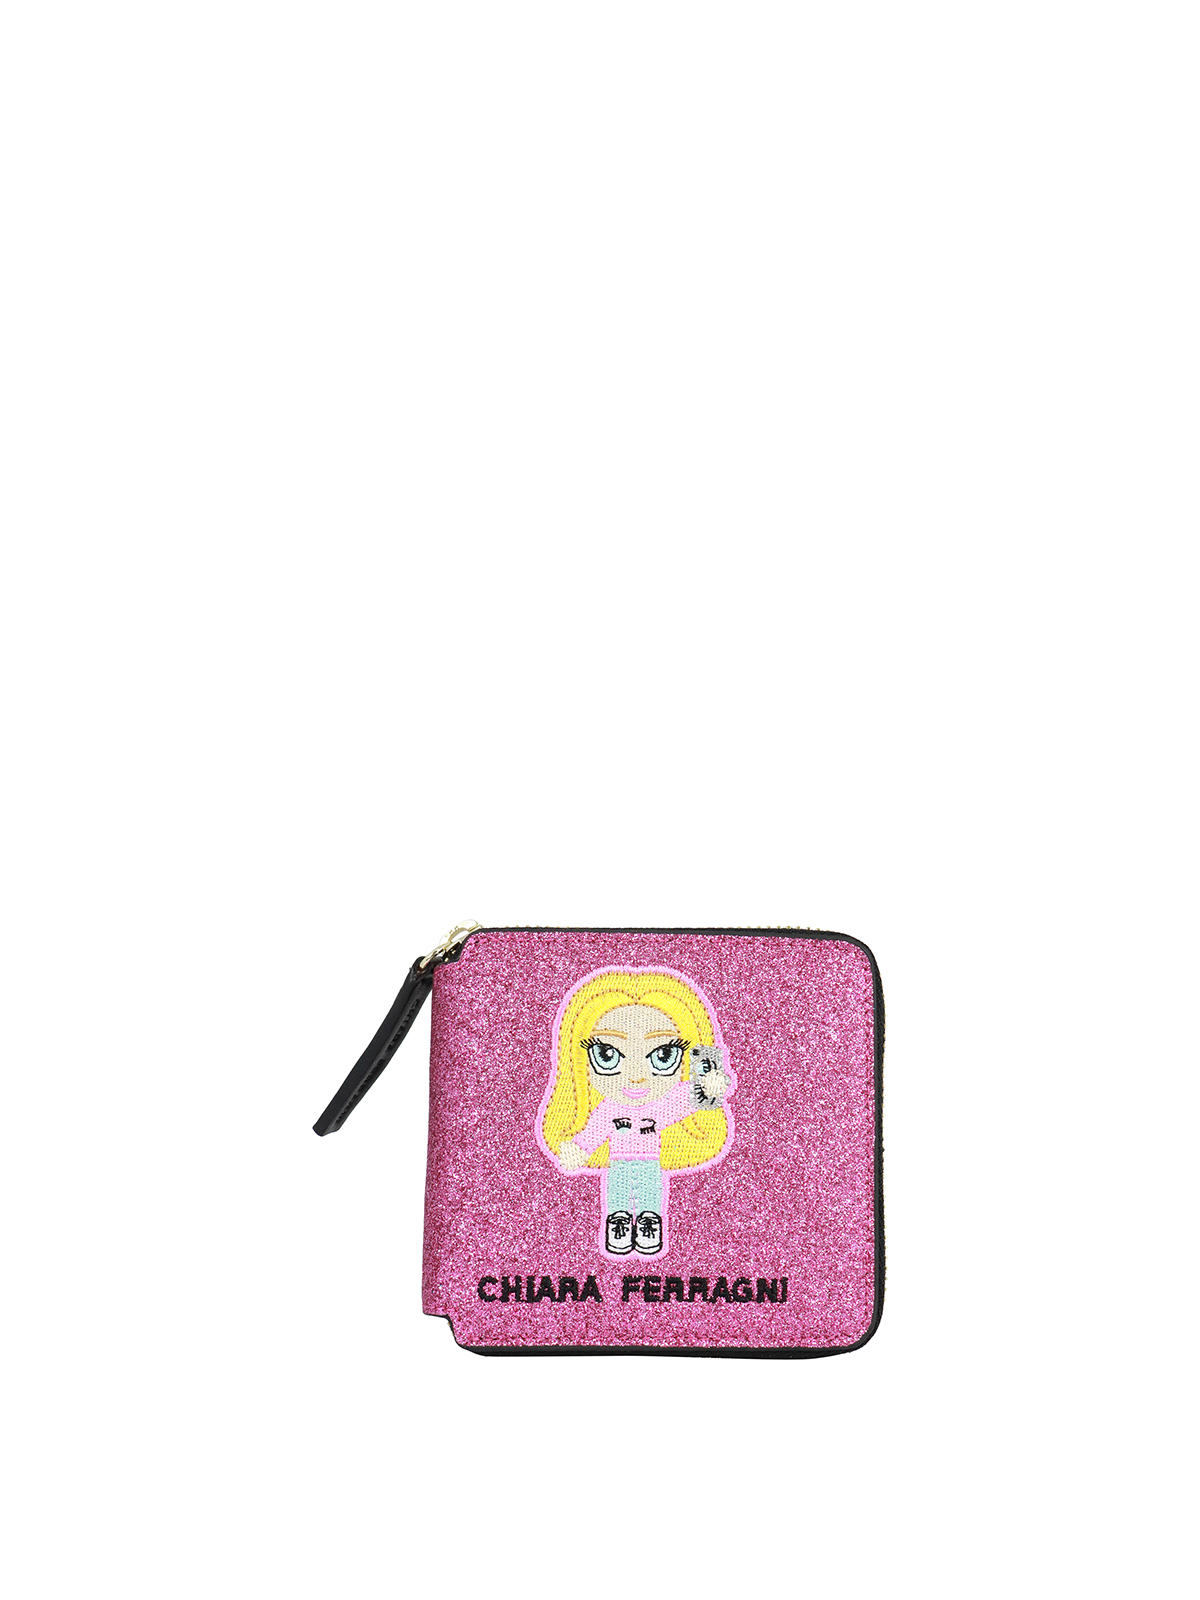 Chiara Ferragni Kids' Cfmascotte Glittered Wallet In Fuchsia